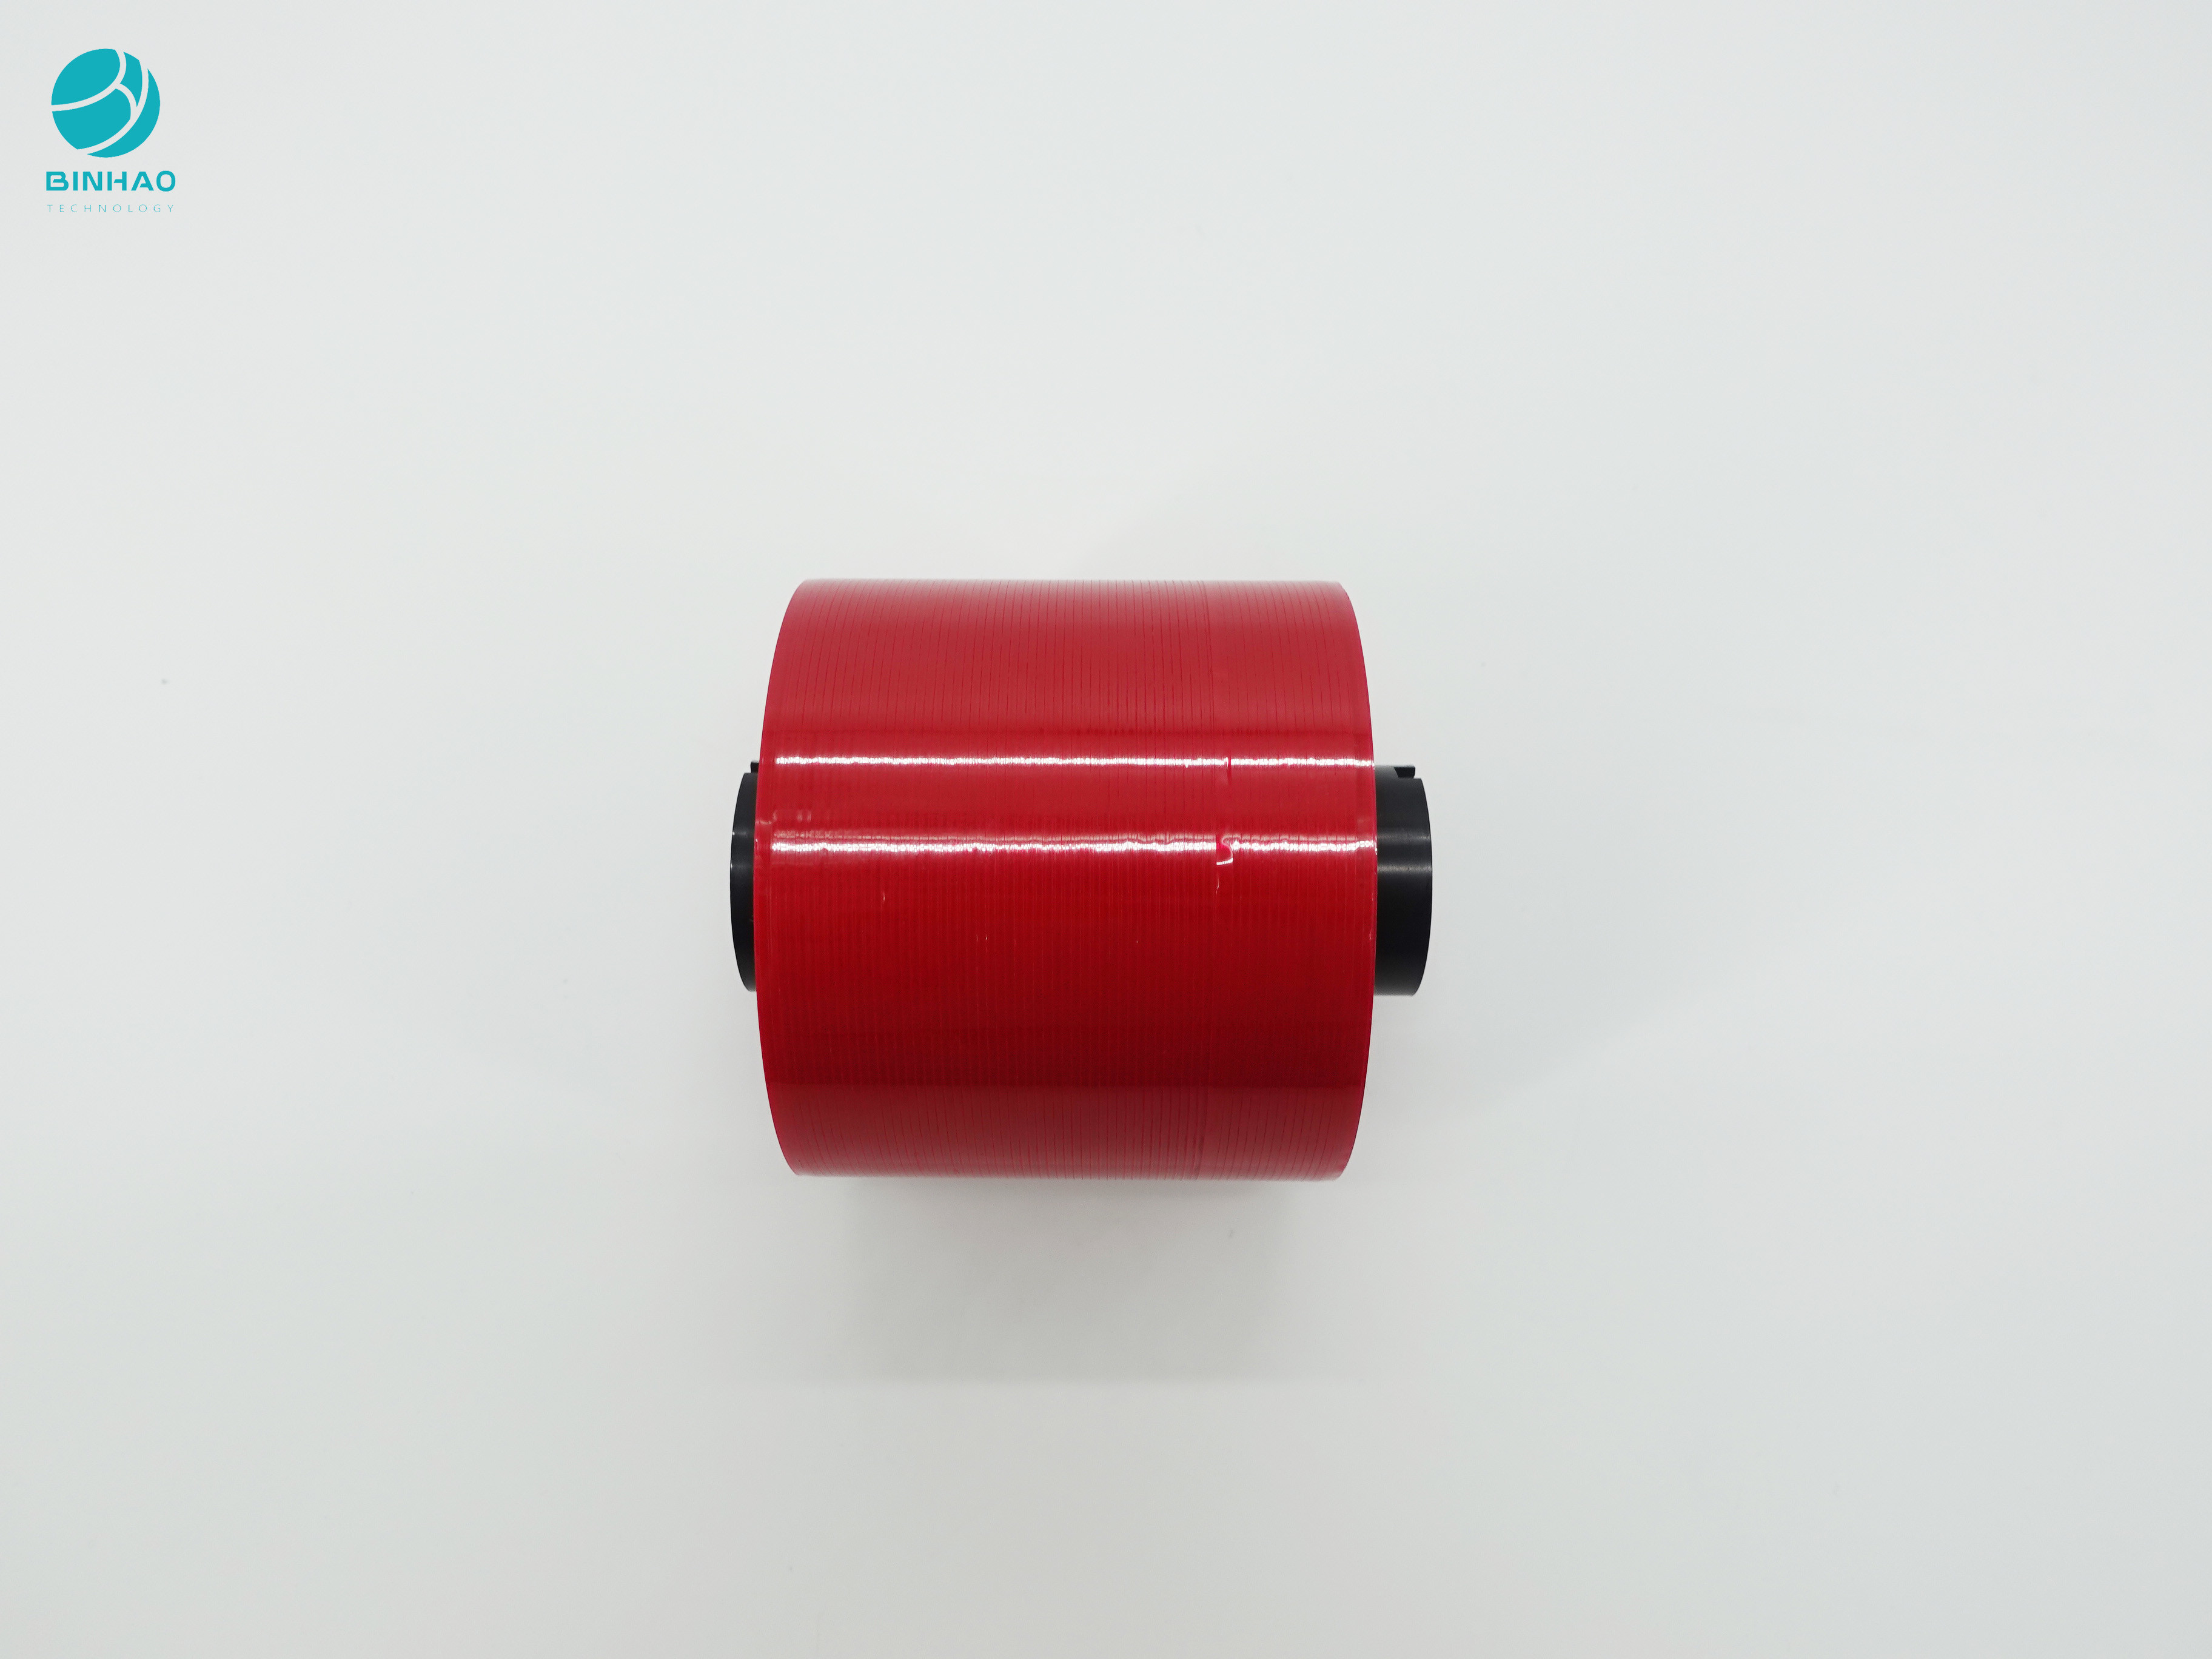 nastro enorme rosso scuro su ordinazione dello strappo di 4mm Rolls per l'imballaggio dei prodotti della scatola di FMCG